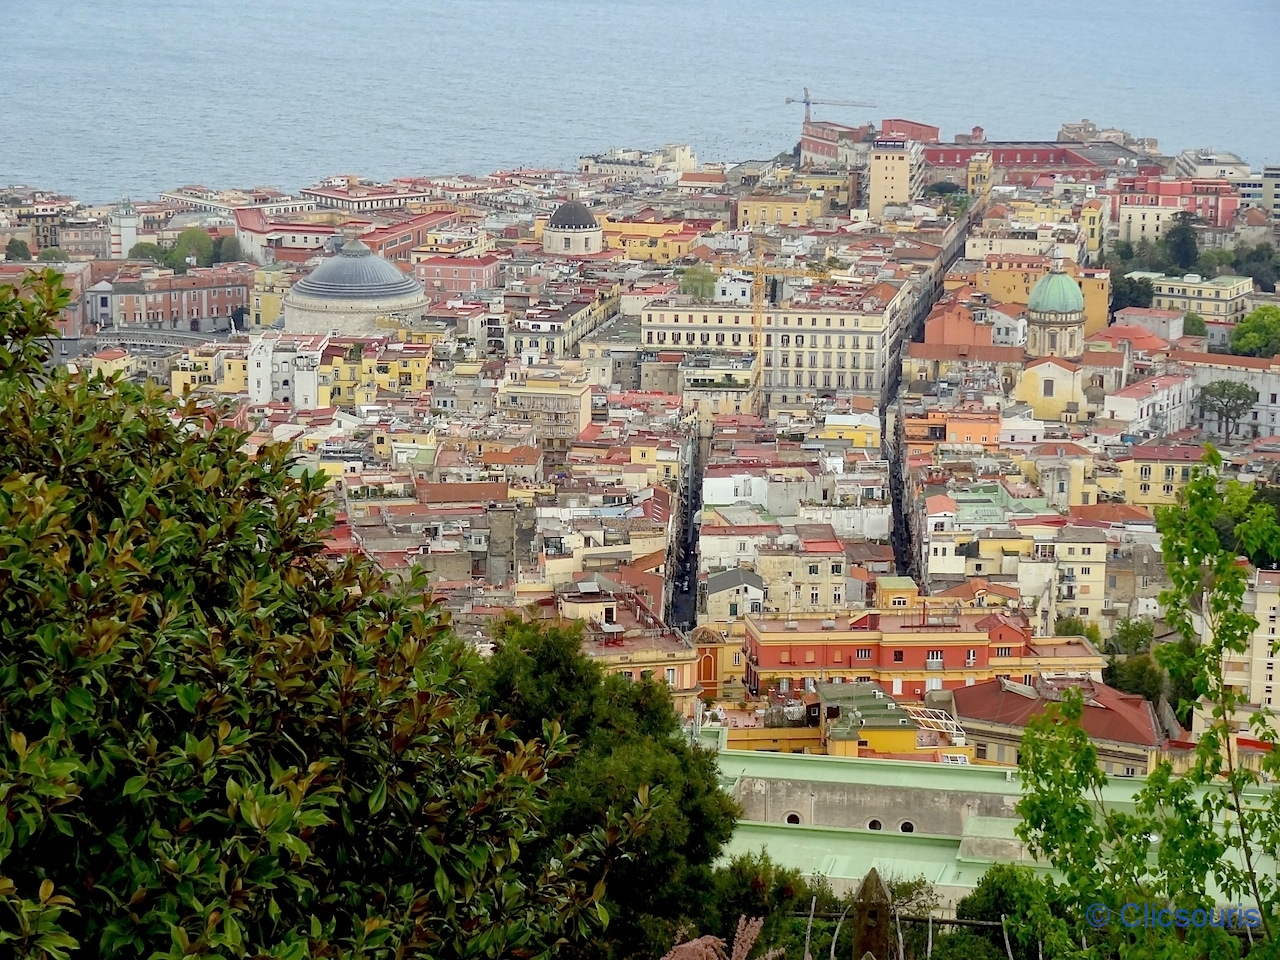 Naples Chartreuse San Martino vue sur le golfe